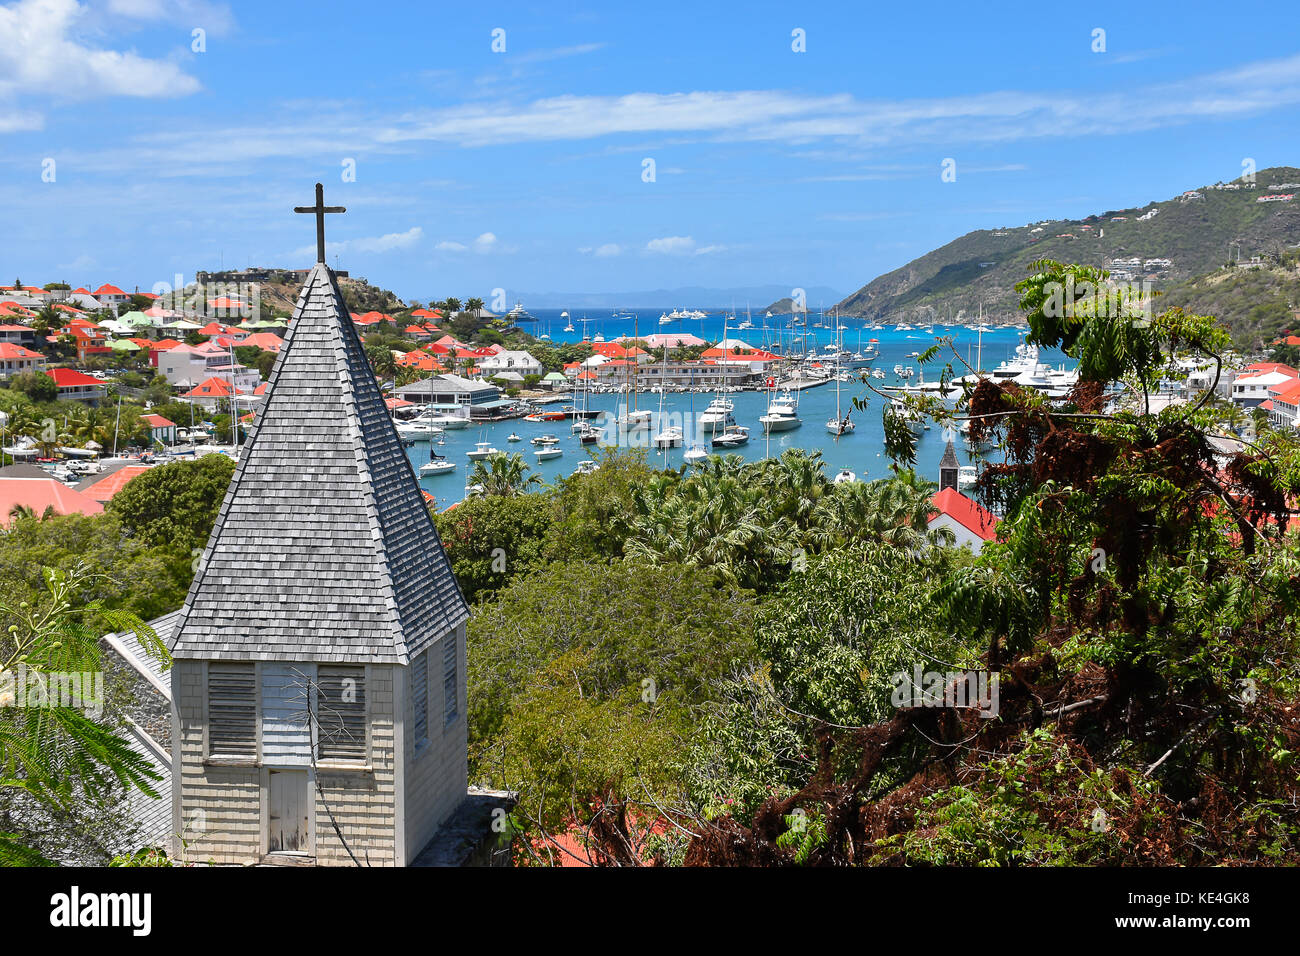 St Barts, Caraïbes, vue sur le port avec église en face Banque D'Images